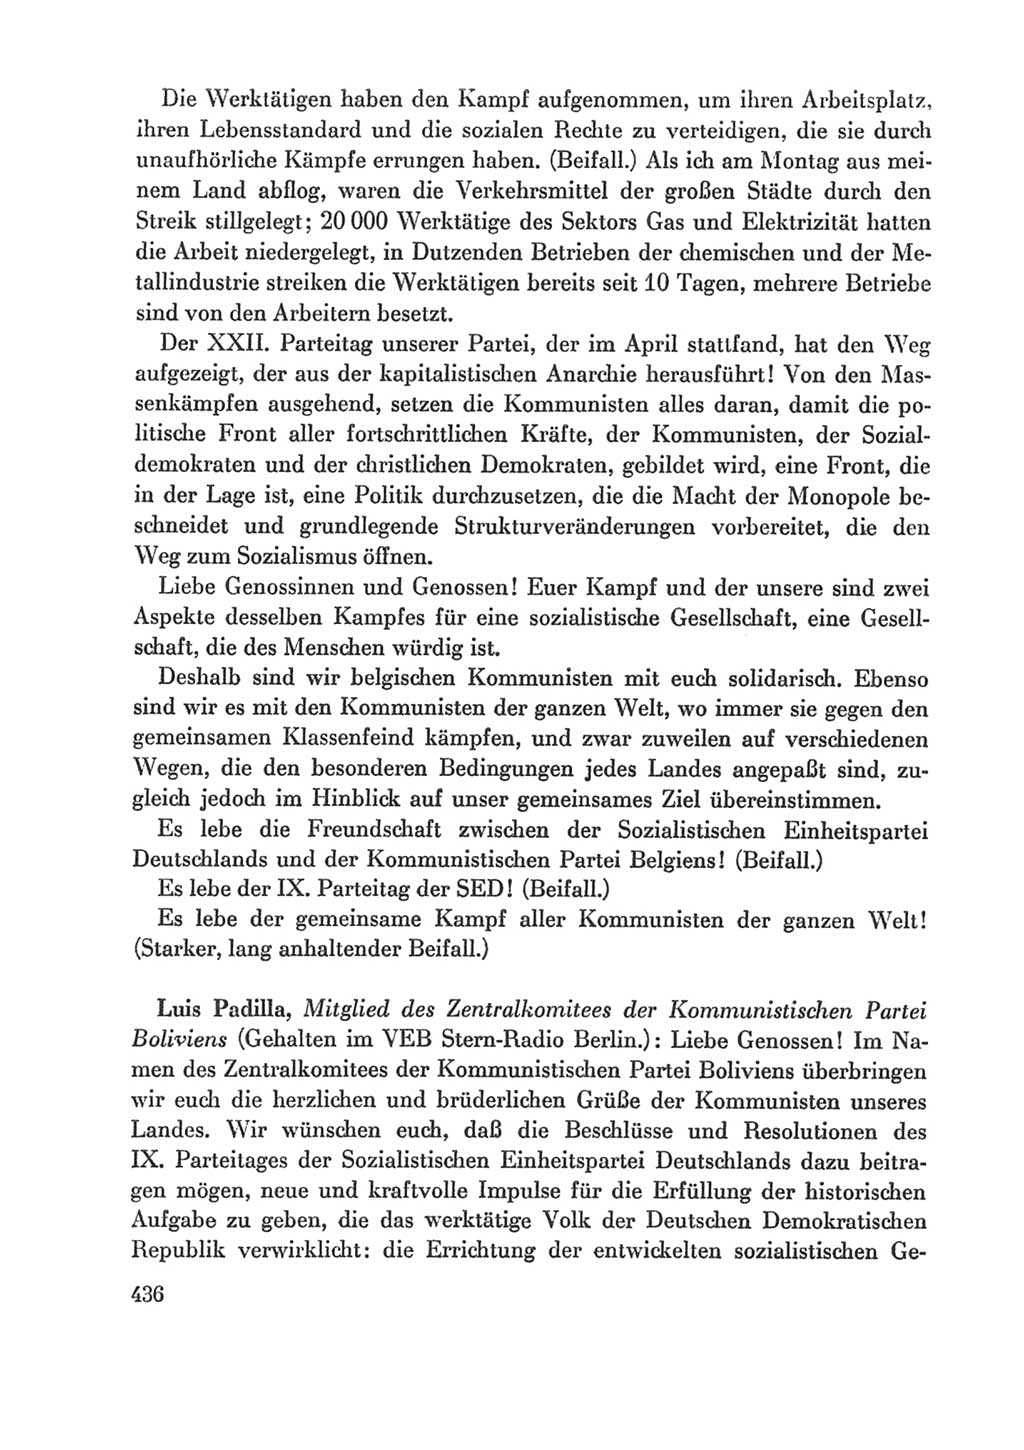 Protokoll der Verhandlungen des Ⅸ. Parteitages der Sozialistischen Einheitspartei Deutschlands (SED) [Deutsche Demokratische Republik (DDR)] 1976, Band 1, Seite 436 (Prot. Verh. Ⅸ. PT SED DDR 1976, Bd. 1, S. 436)